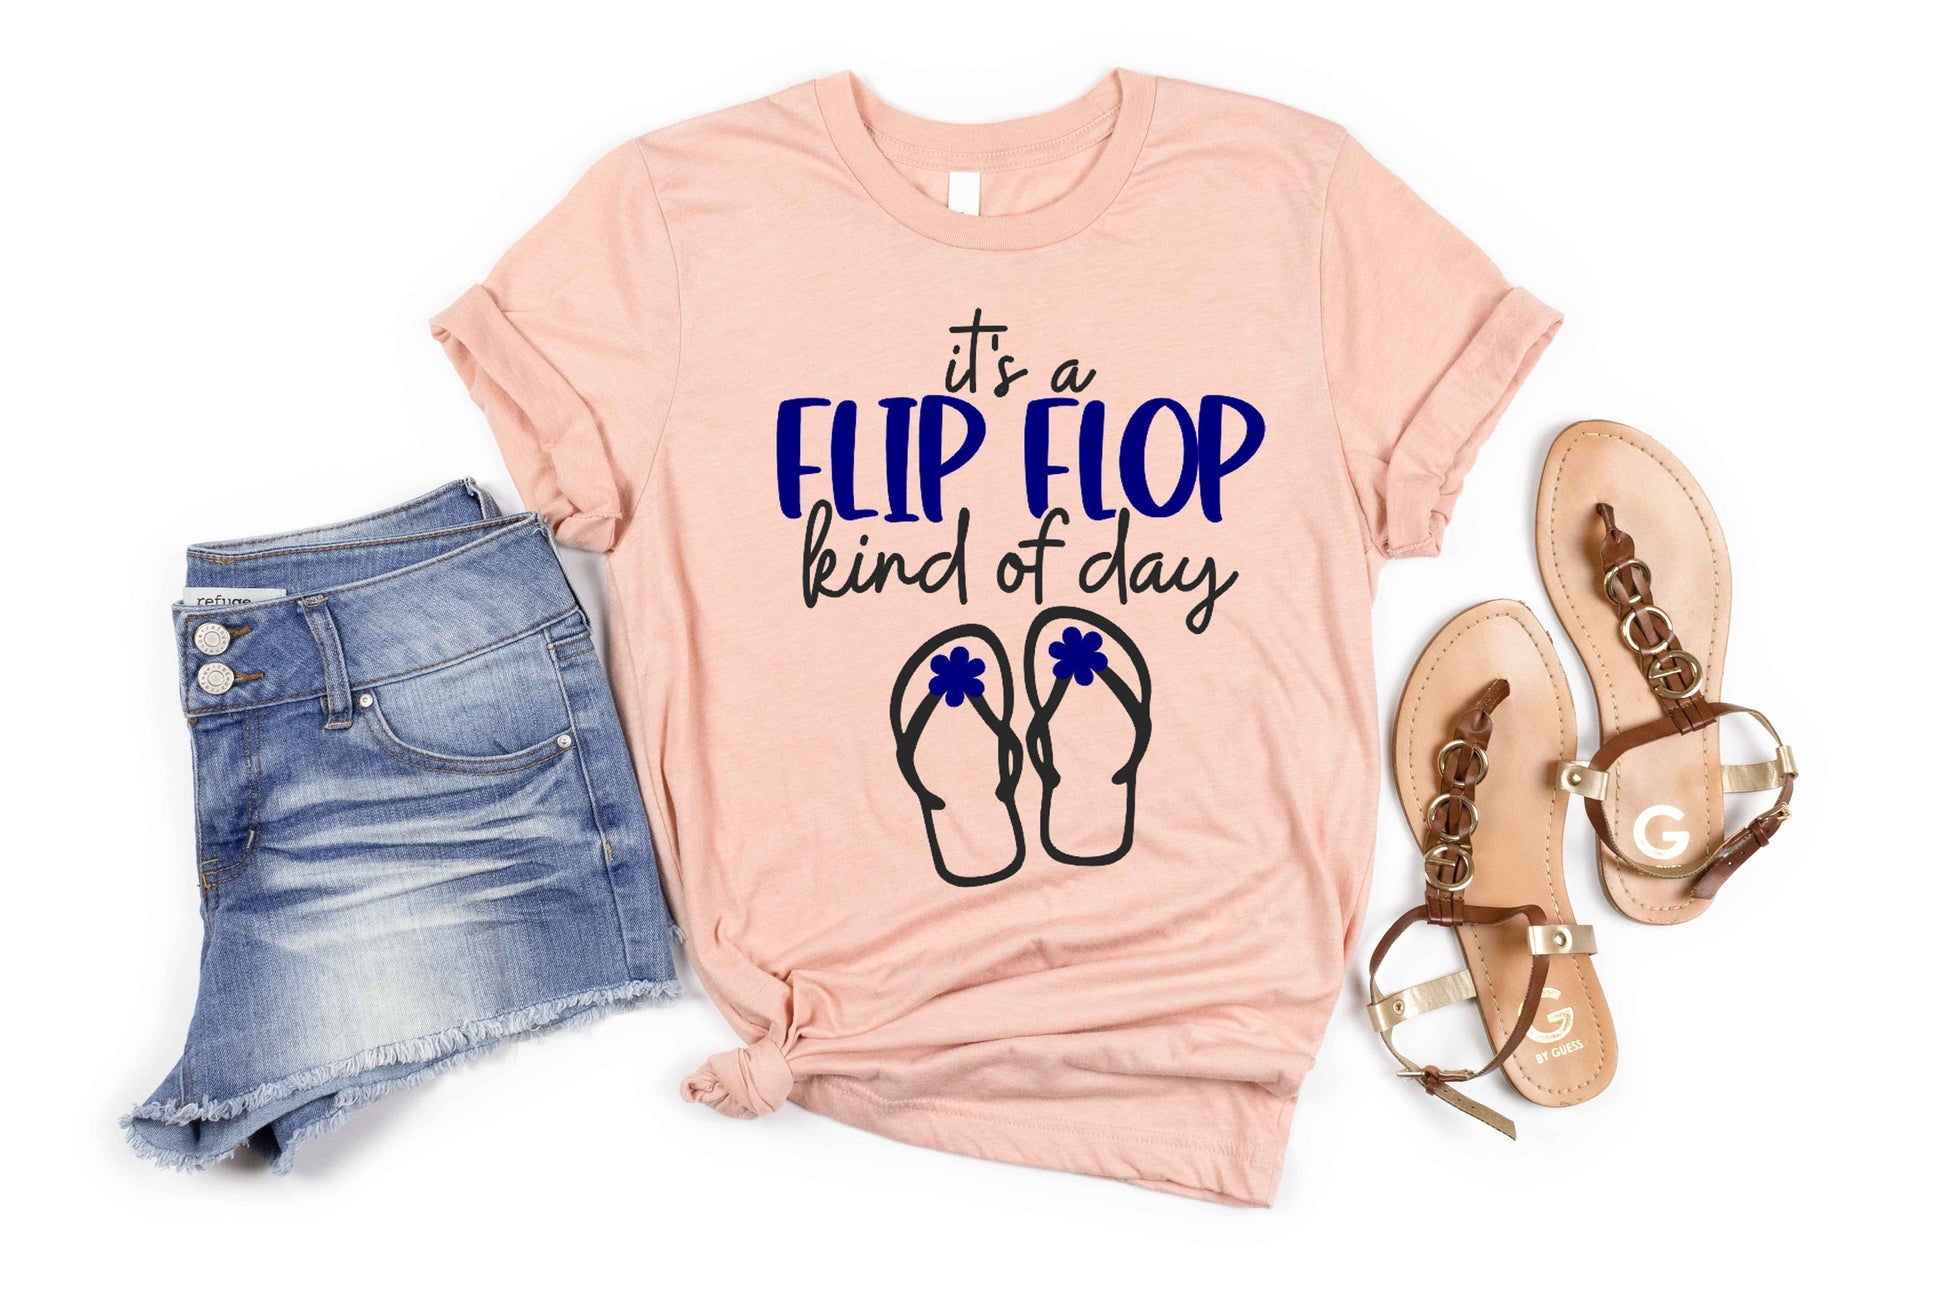 It's a Flip Flop Kind of Day short sleeve t-shirt - funny t-shirt - beach day shirt - summer shirt